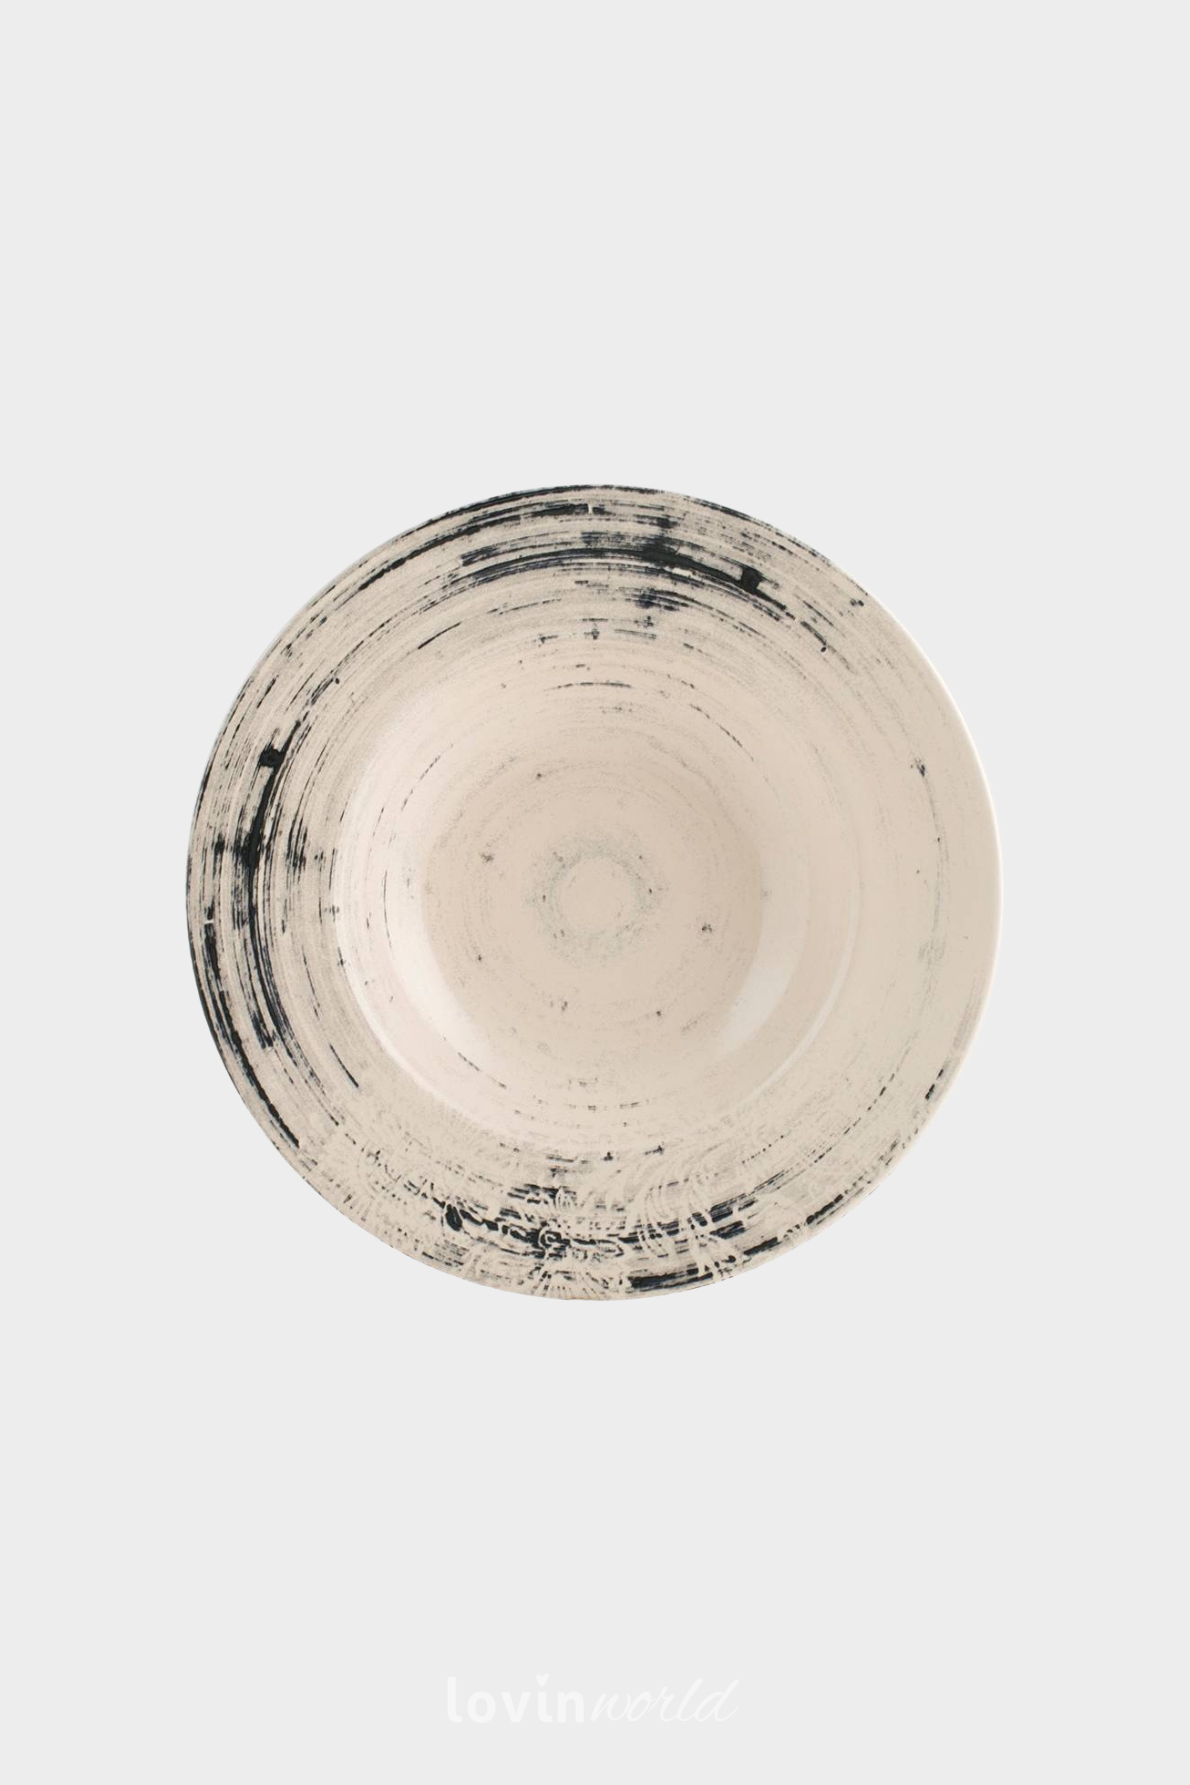 Piatto pasta Silk in stoneware in colore beige 28 cm.-1